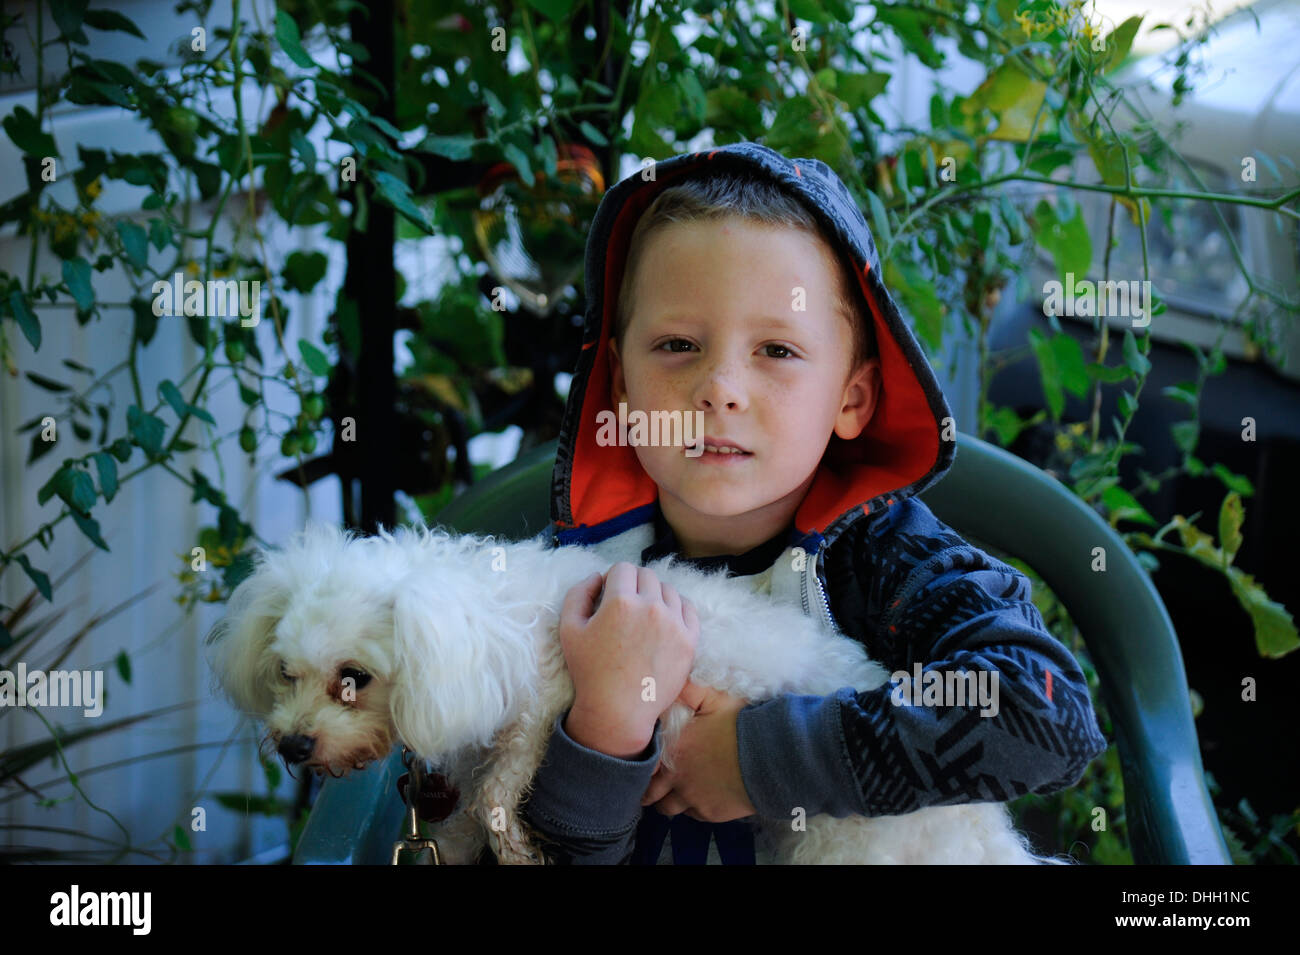 Little boy holding pet dog Stock Photo